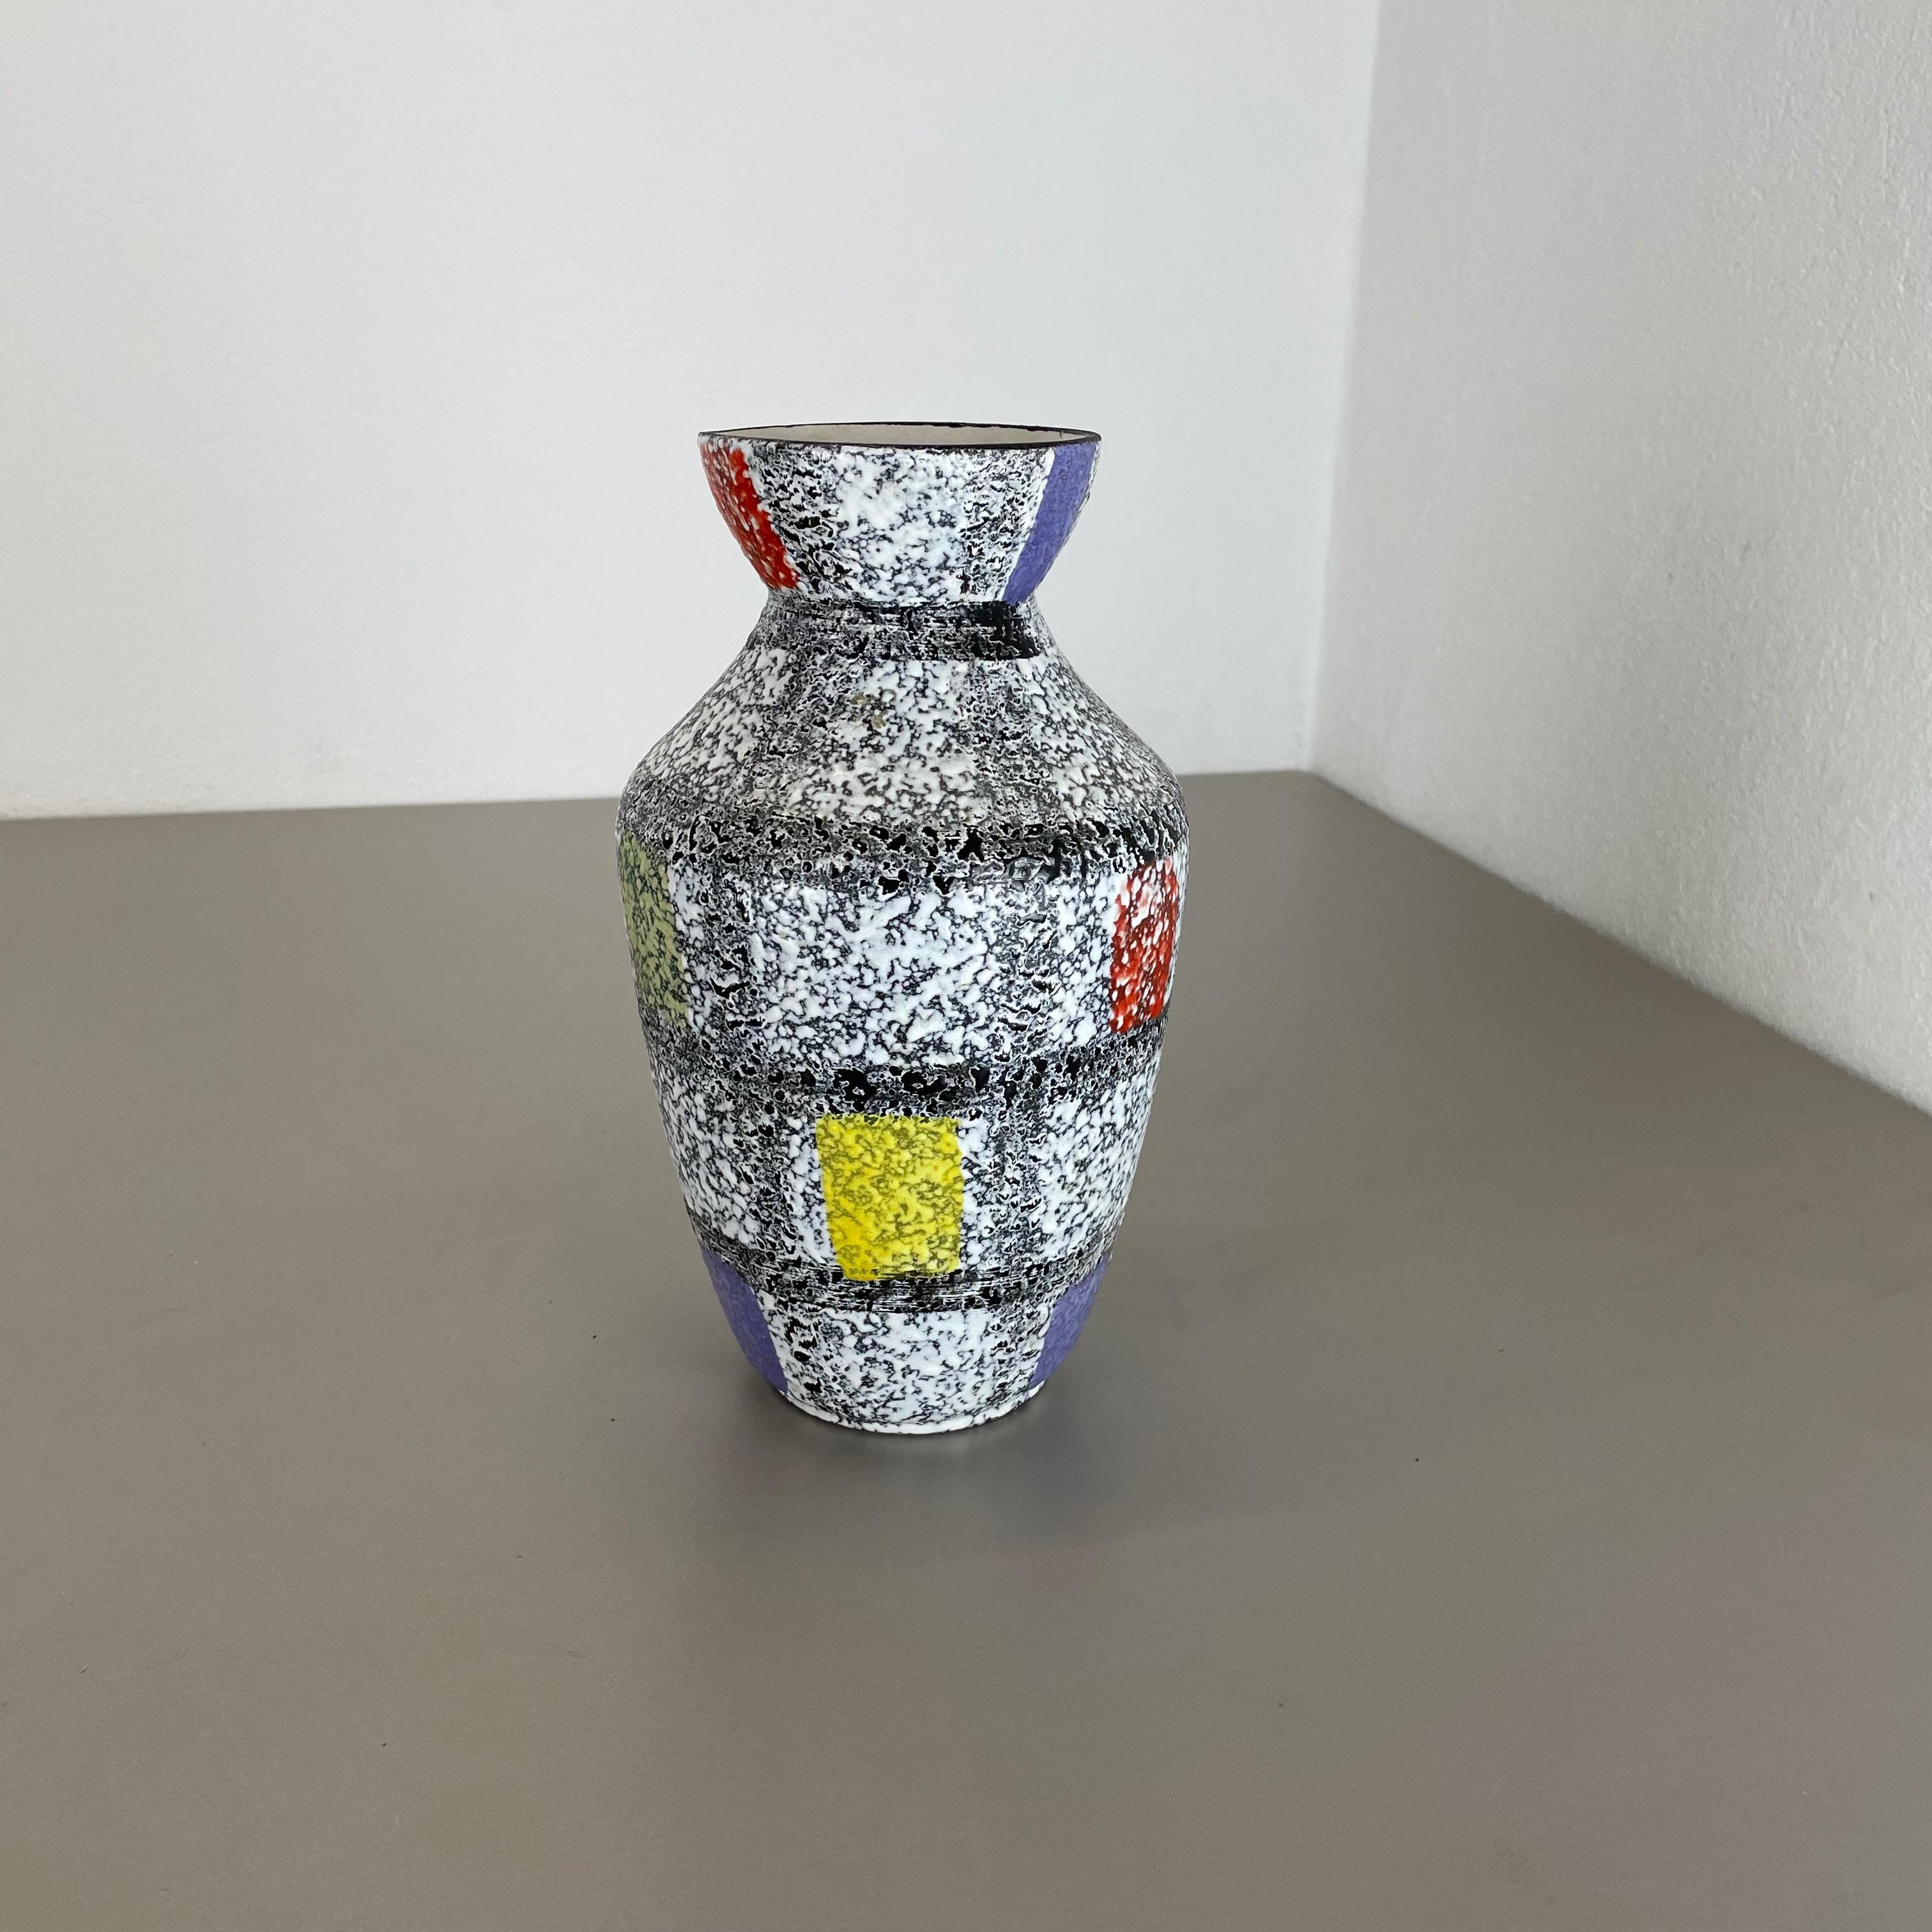 Artikel:

Vase aus Keramik


Produzent:

BAY Ceramic, Deutschland



Jahrzehnt:

1950s




Original Vintage Keramikvase aus den 1950er Jahren, hergestellt in Deutschland. Hochwertige deutsche Produktion mit schöner abstrakter